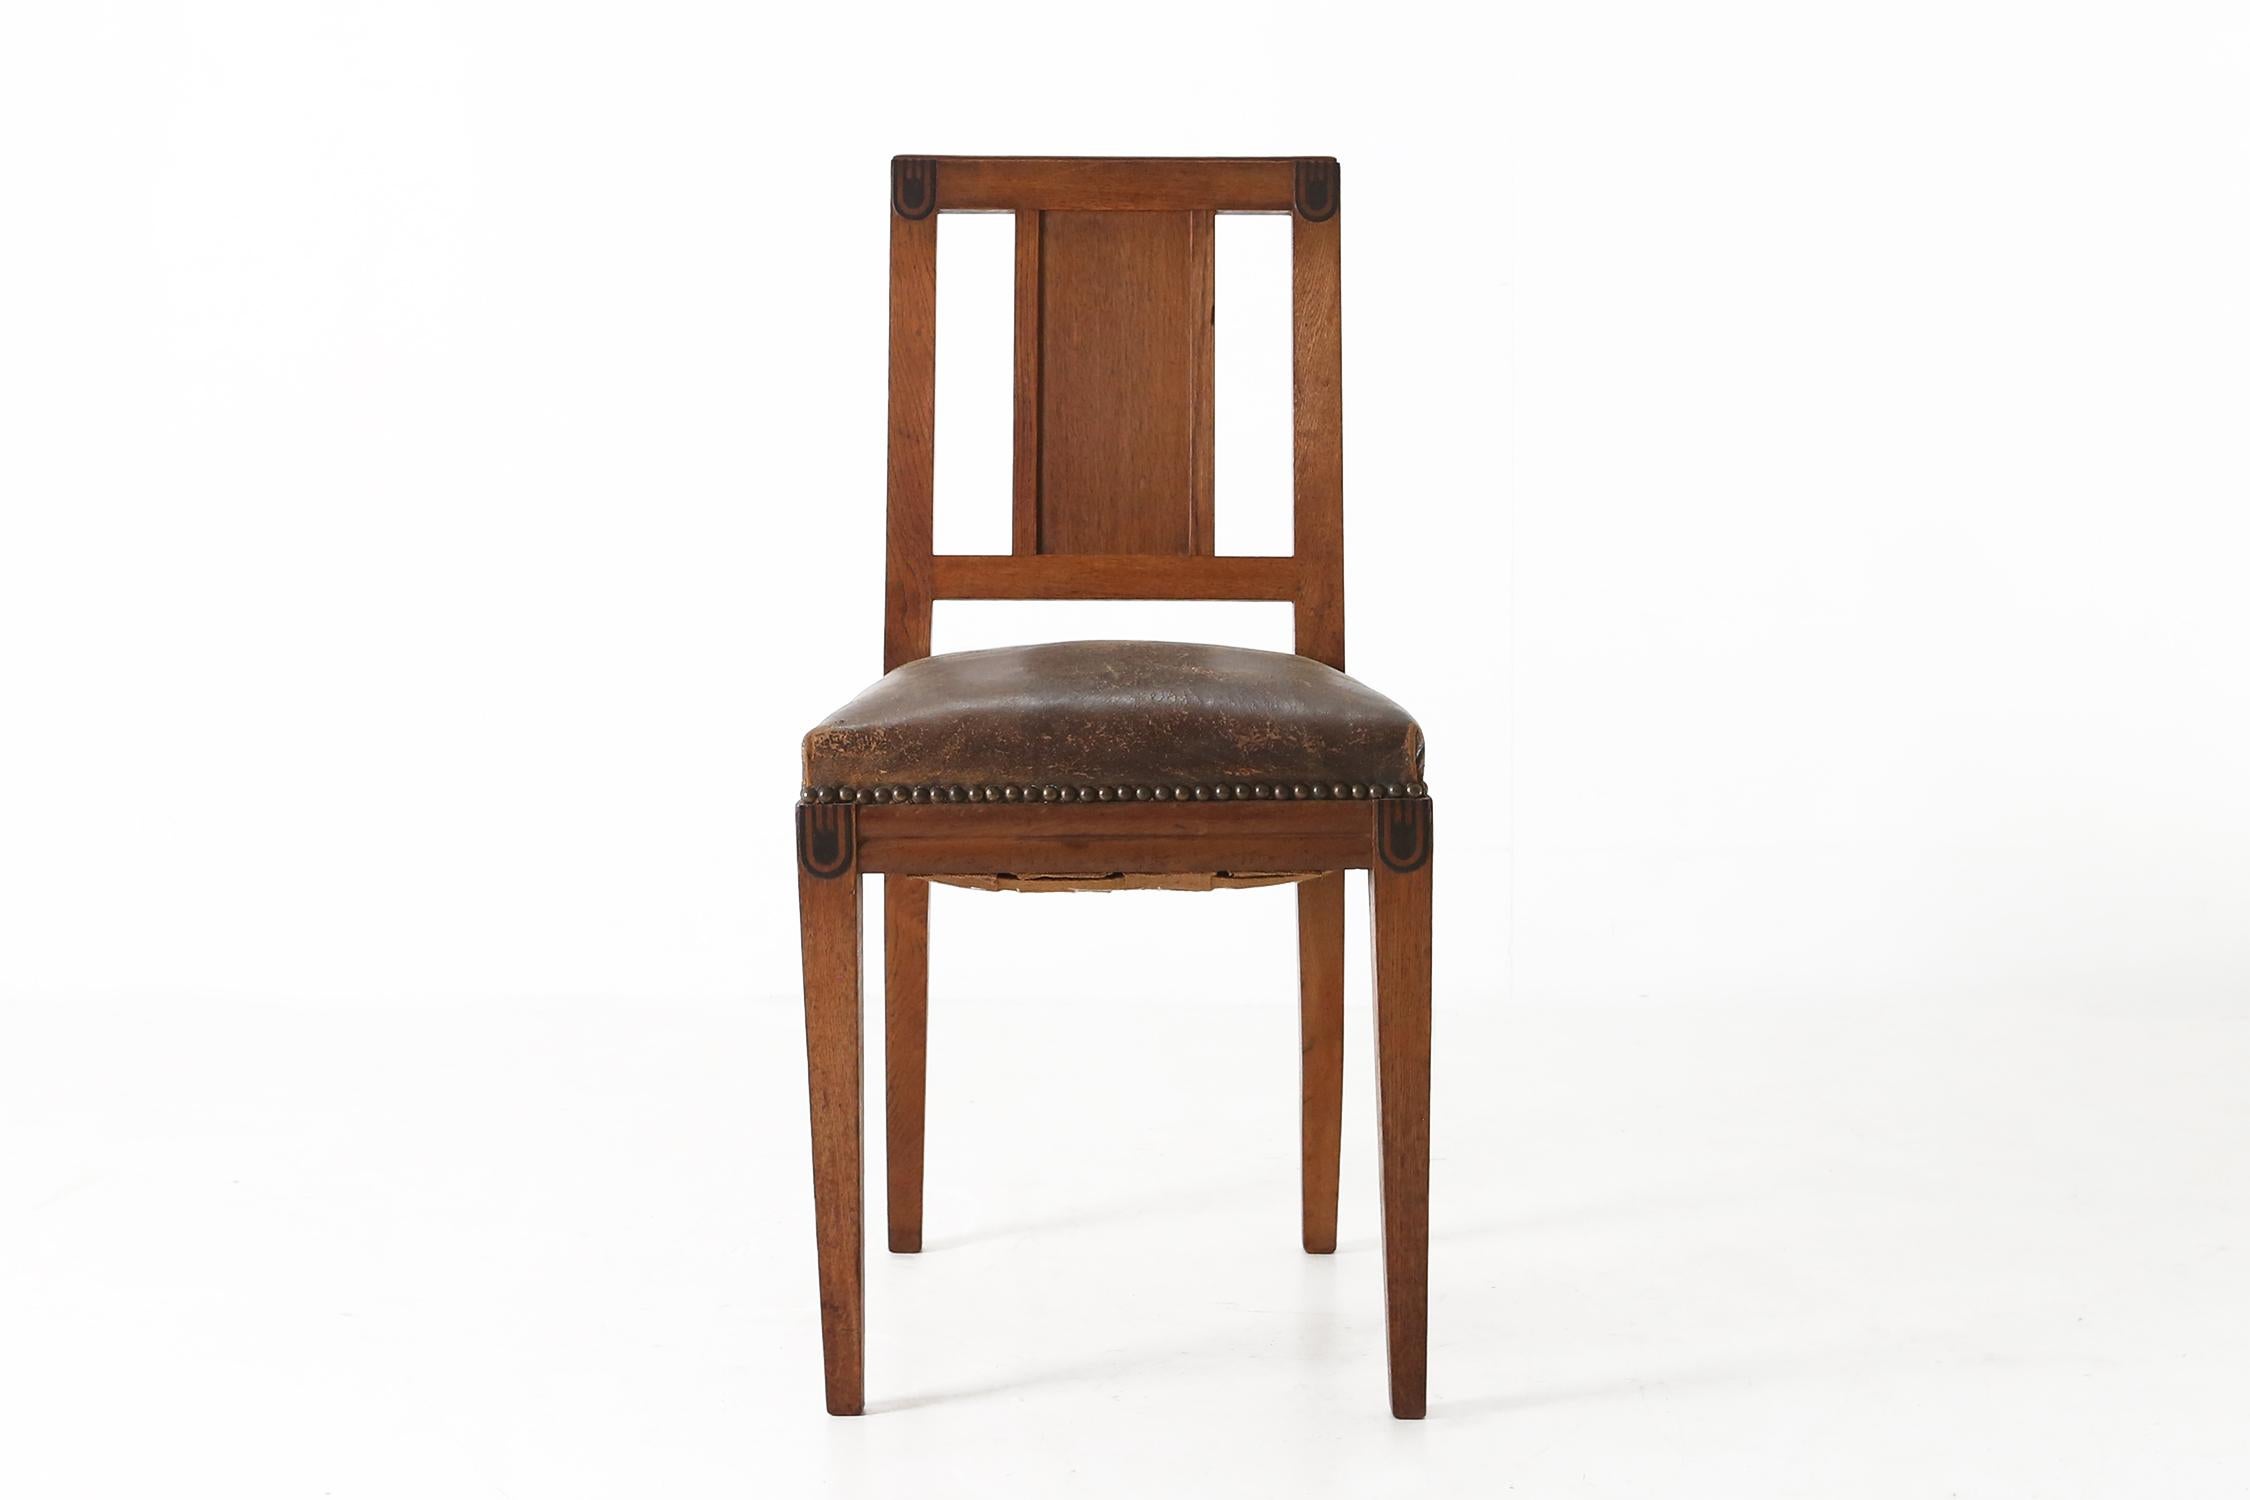 Art-Déco-Stuhl des französischen Designers Maurice Dufrene
für die Internationale Ausstellung für moderne Kunst und Industrie 1925 in Paris.
Hergestellt aus Eiche und Leder.

Dufrene ist einer der bedeutendsten Designer des Art déco. Er